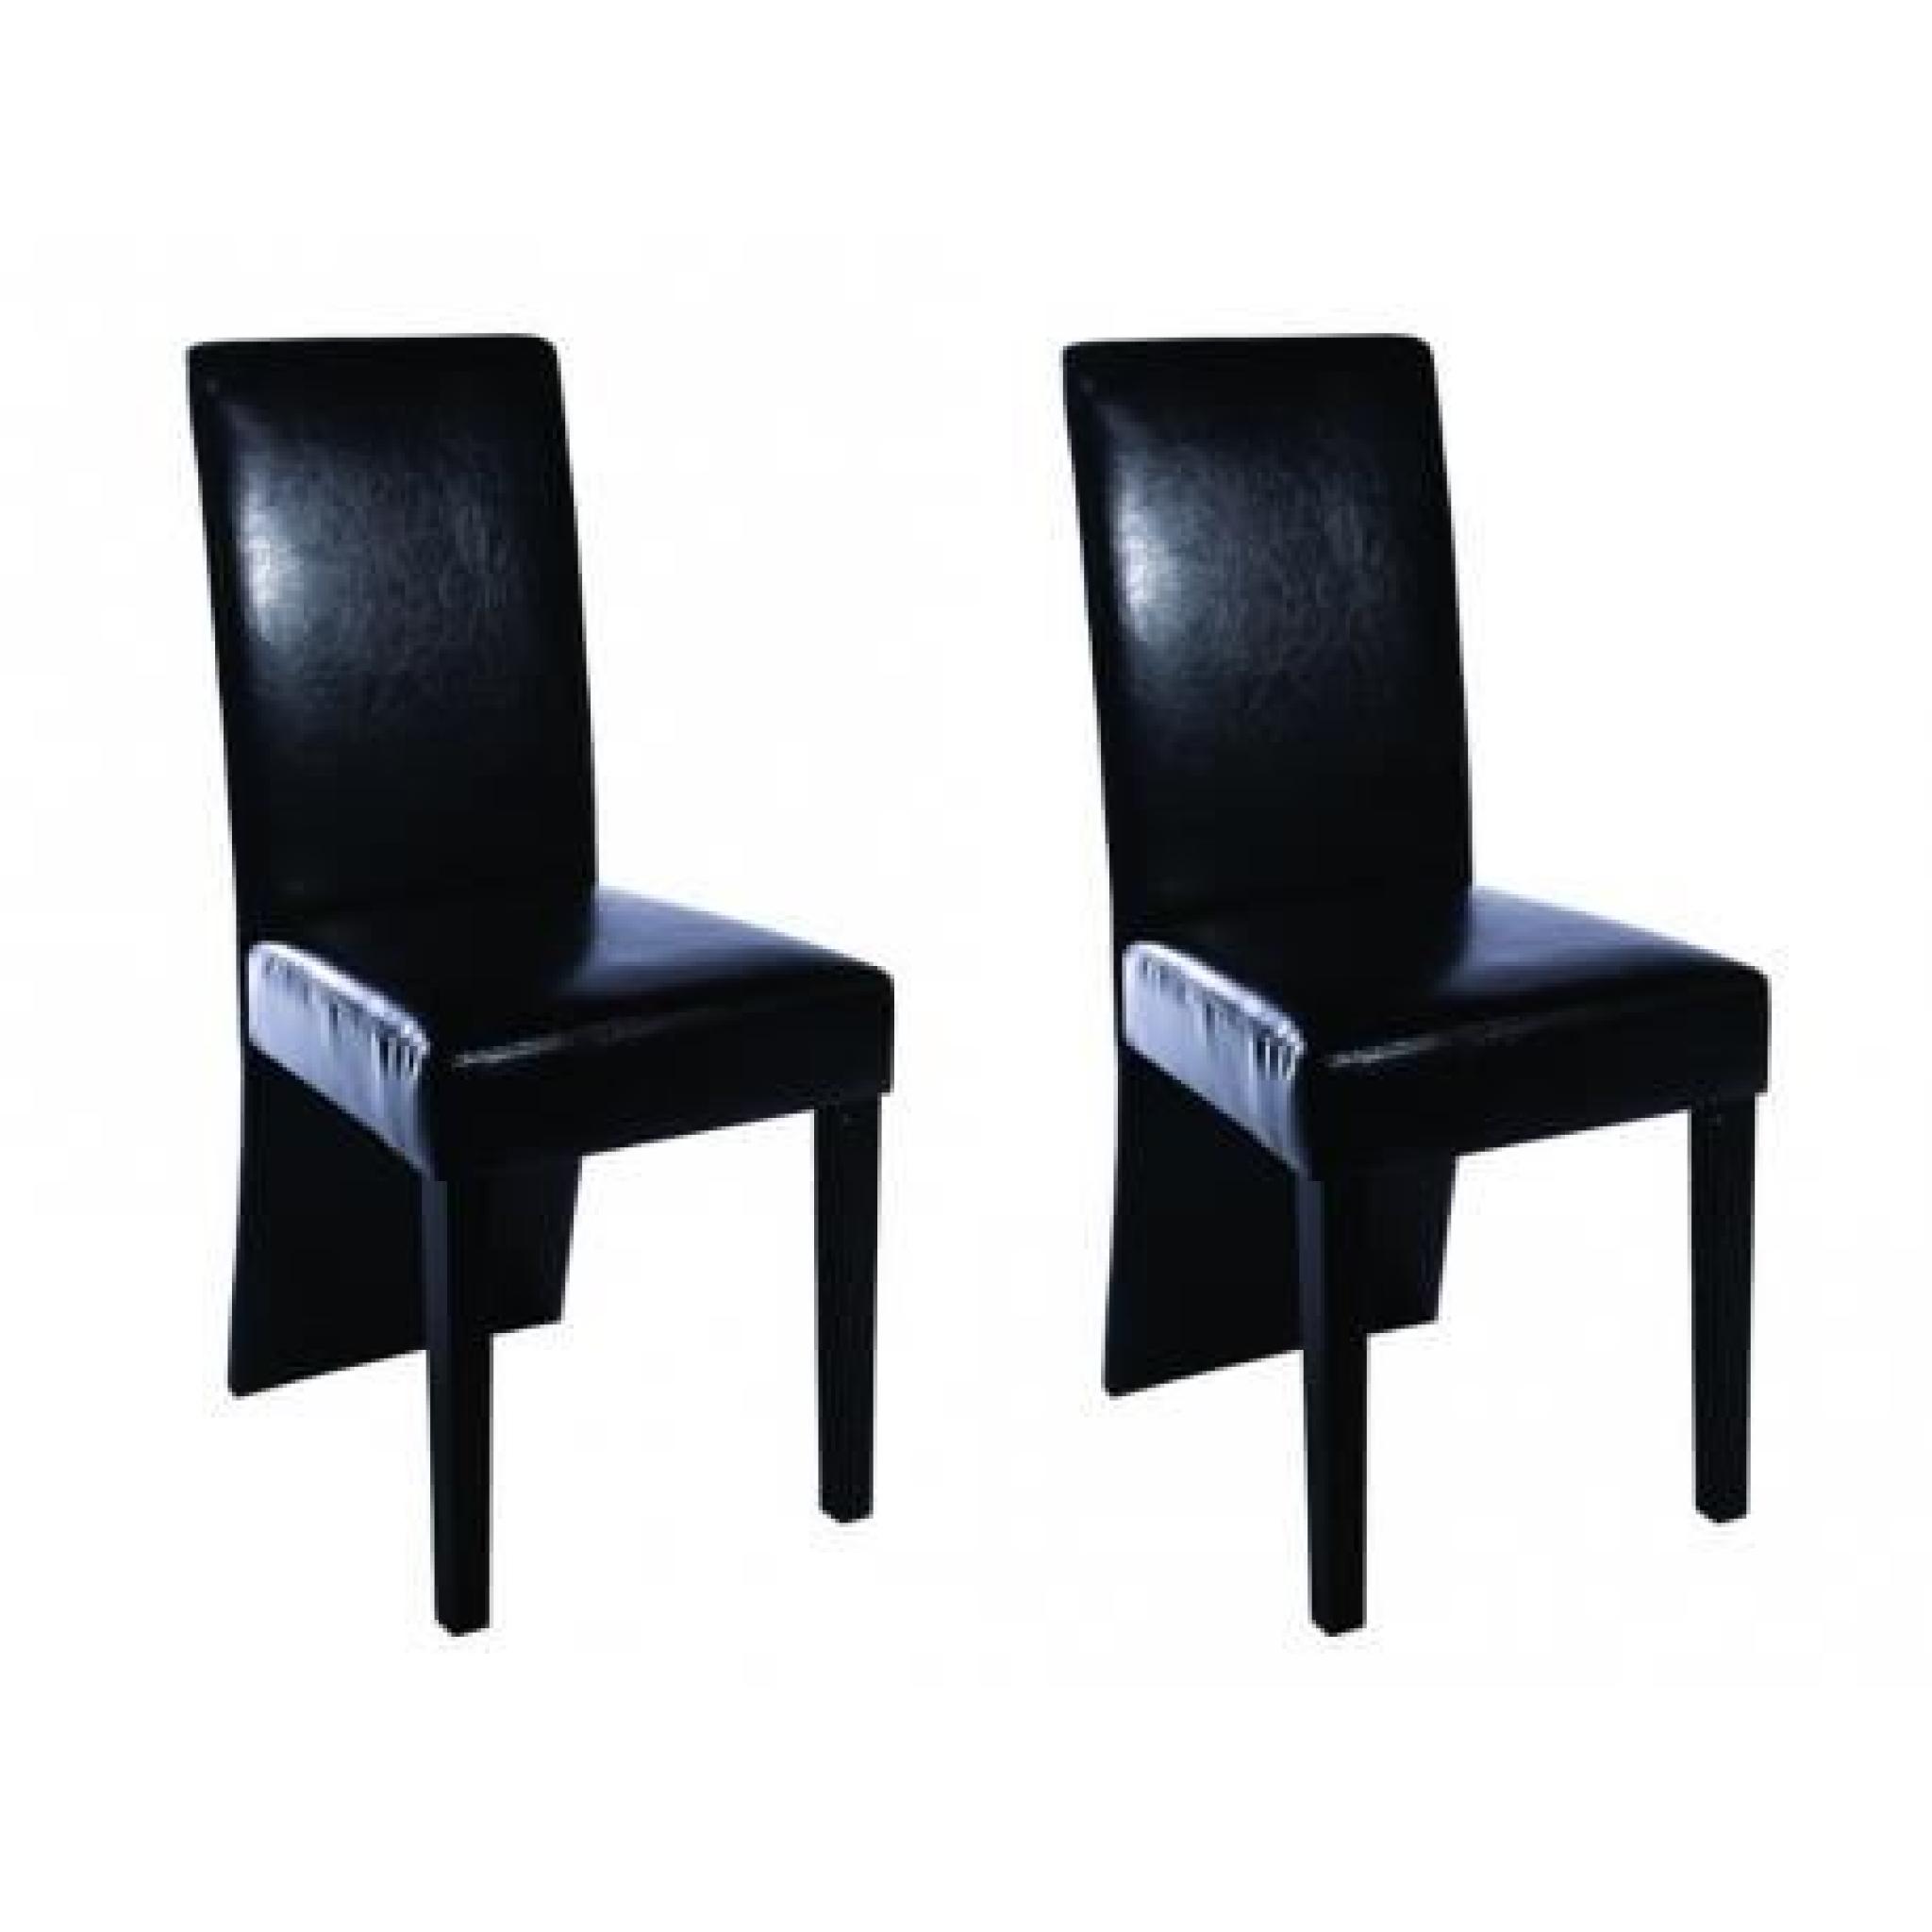 Chaise design bois noir (lot de 2) Stylashop pas cher